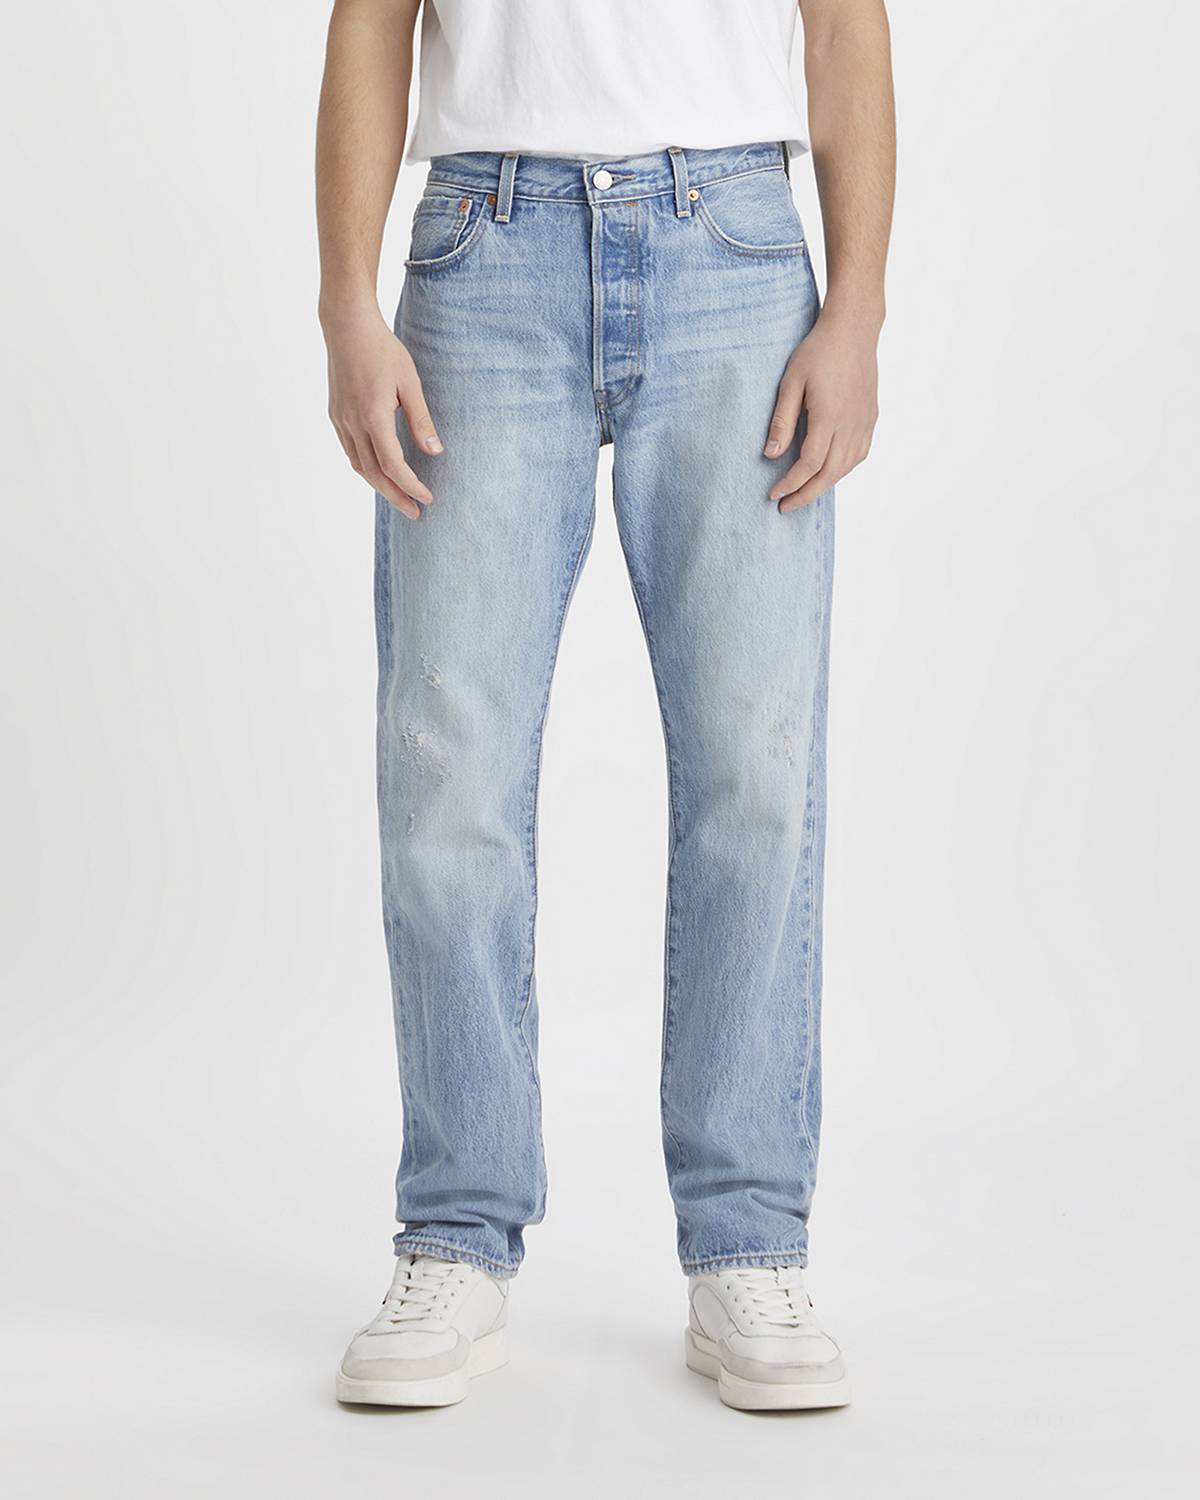 Model wearing 501® '54 jeans